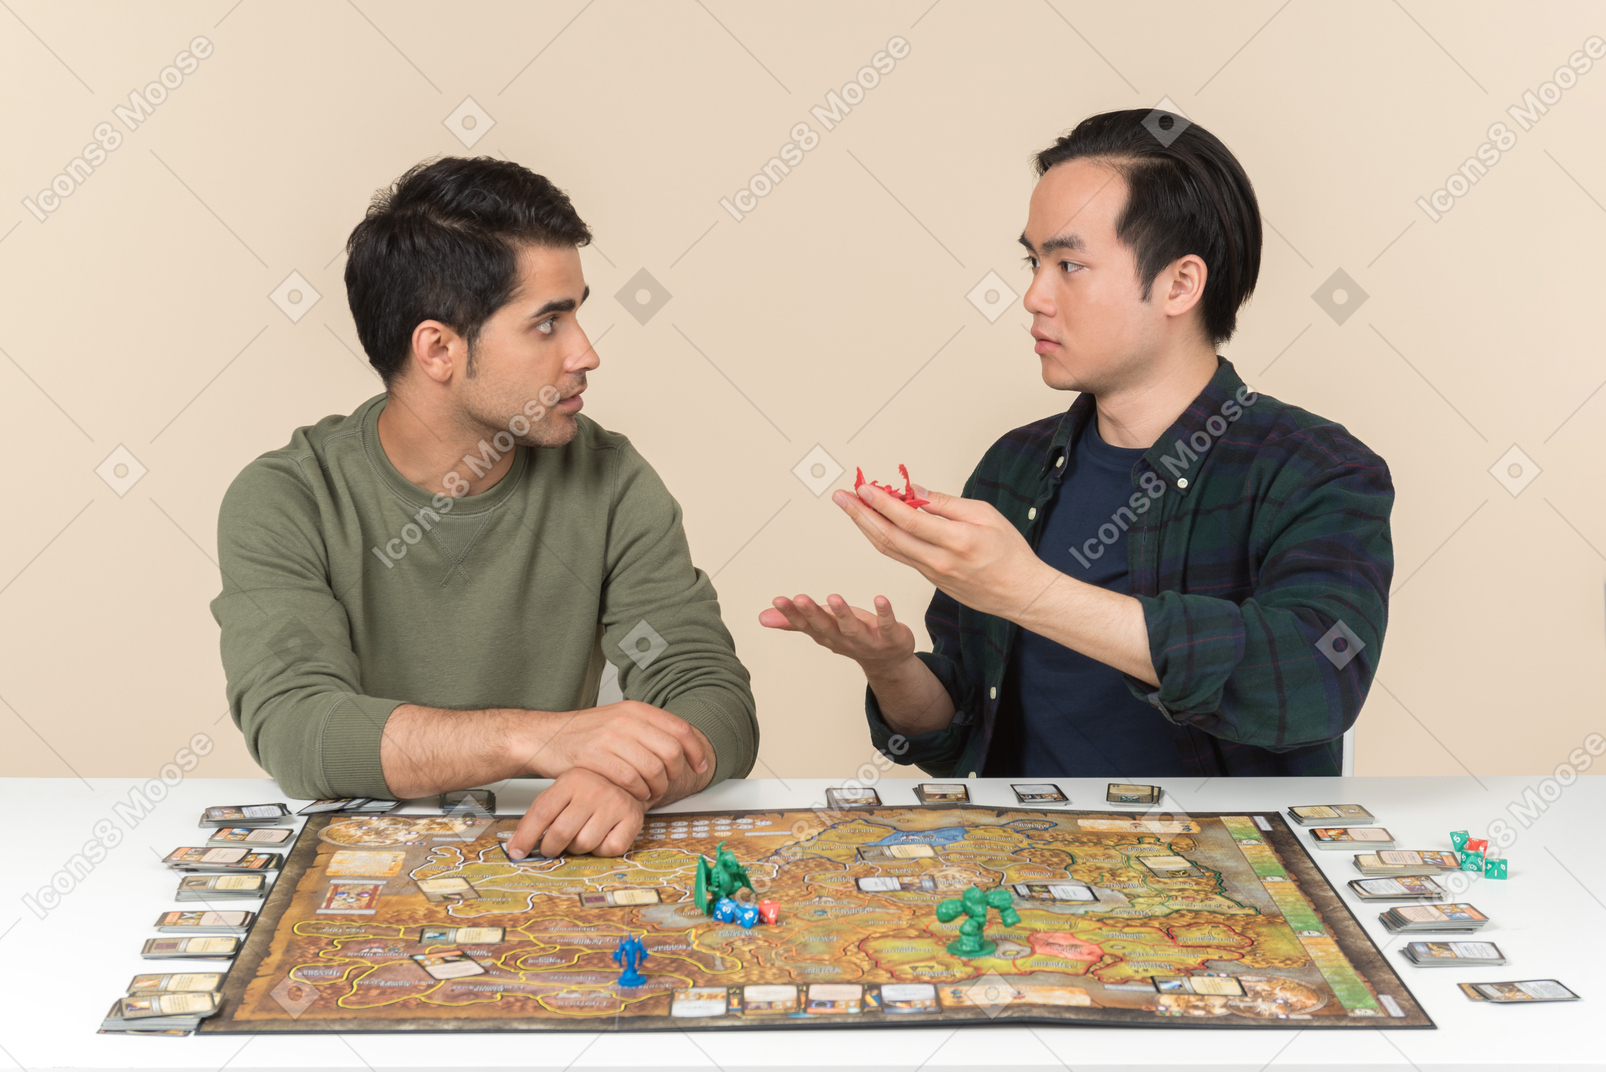 Amigos interraciales descubriendo algo mientras juegan juegos de mesa